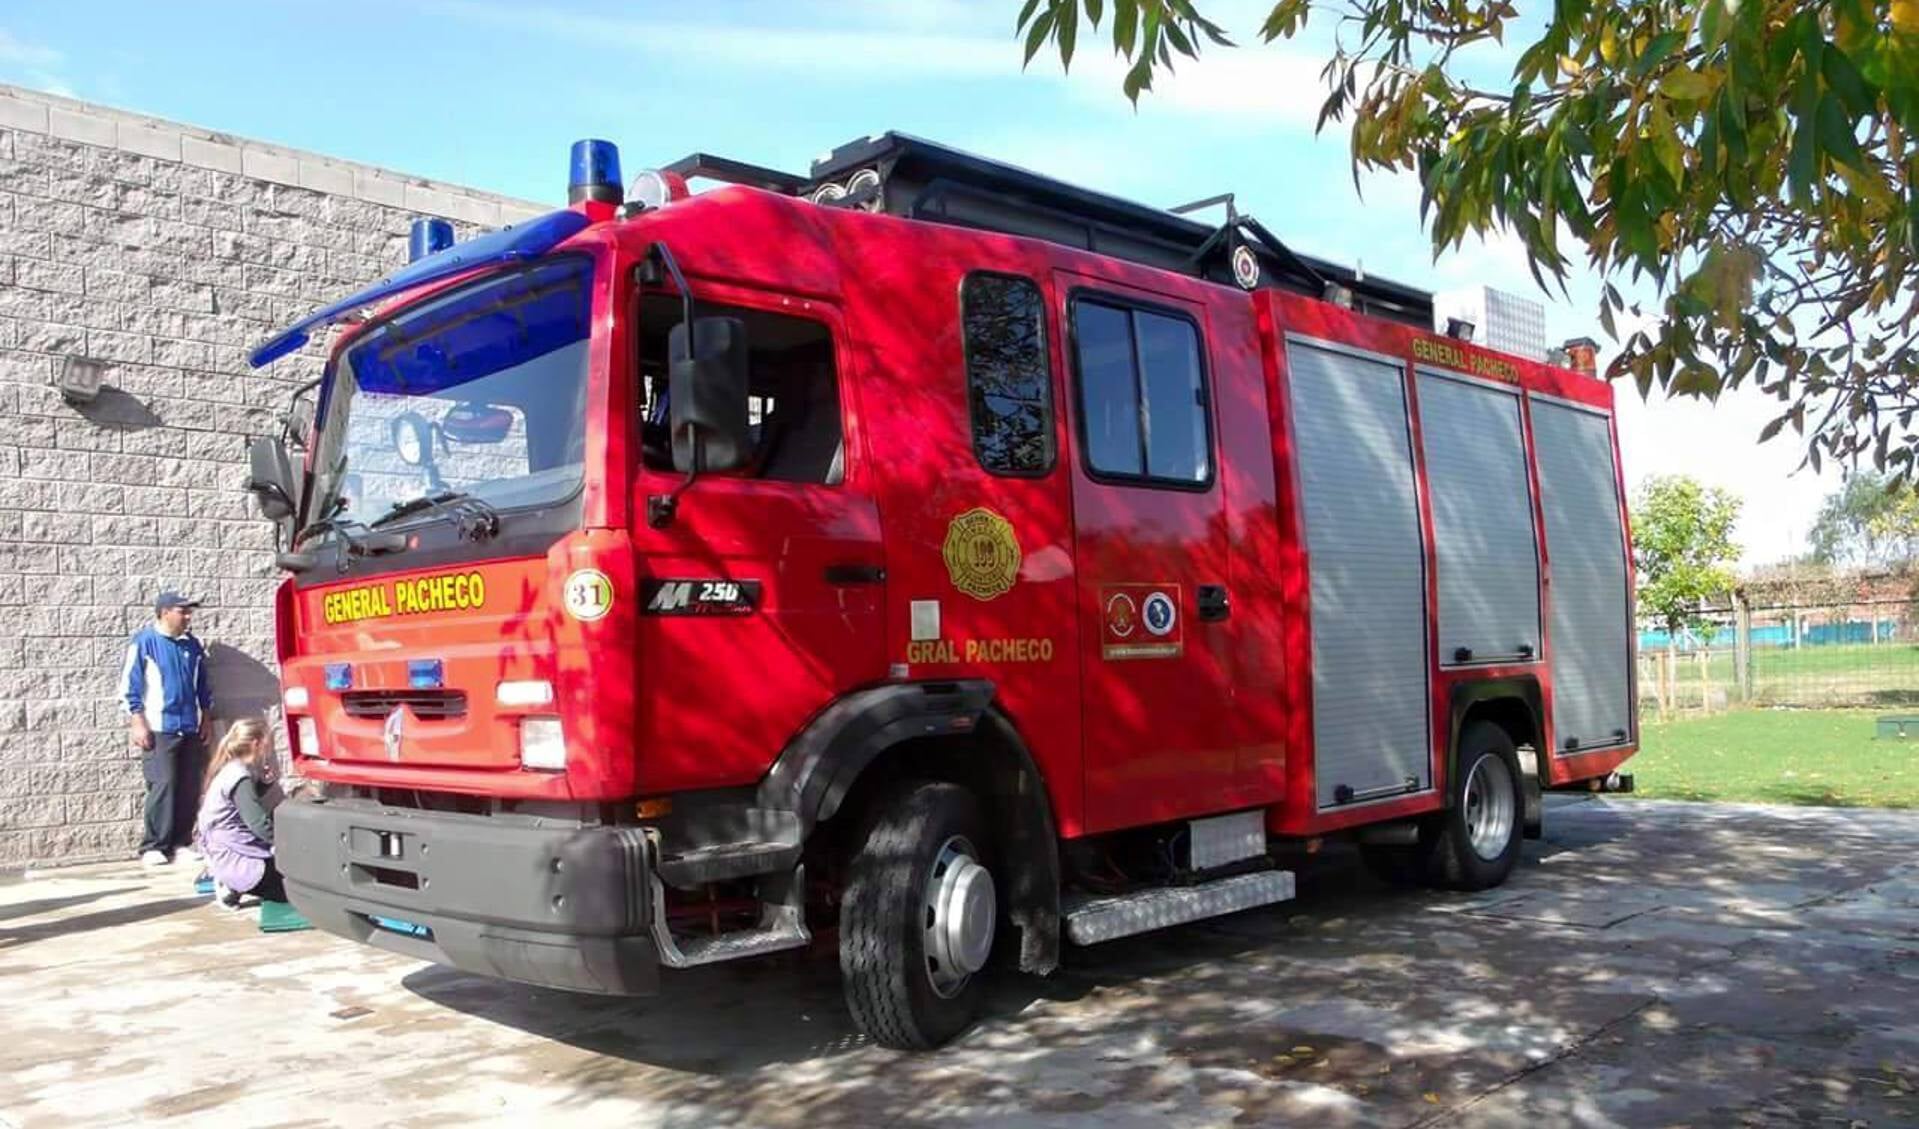 De brandweerwagen in Argentijnse dienst. 